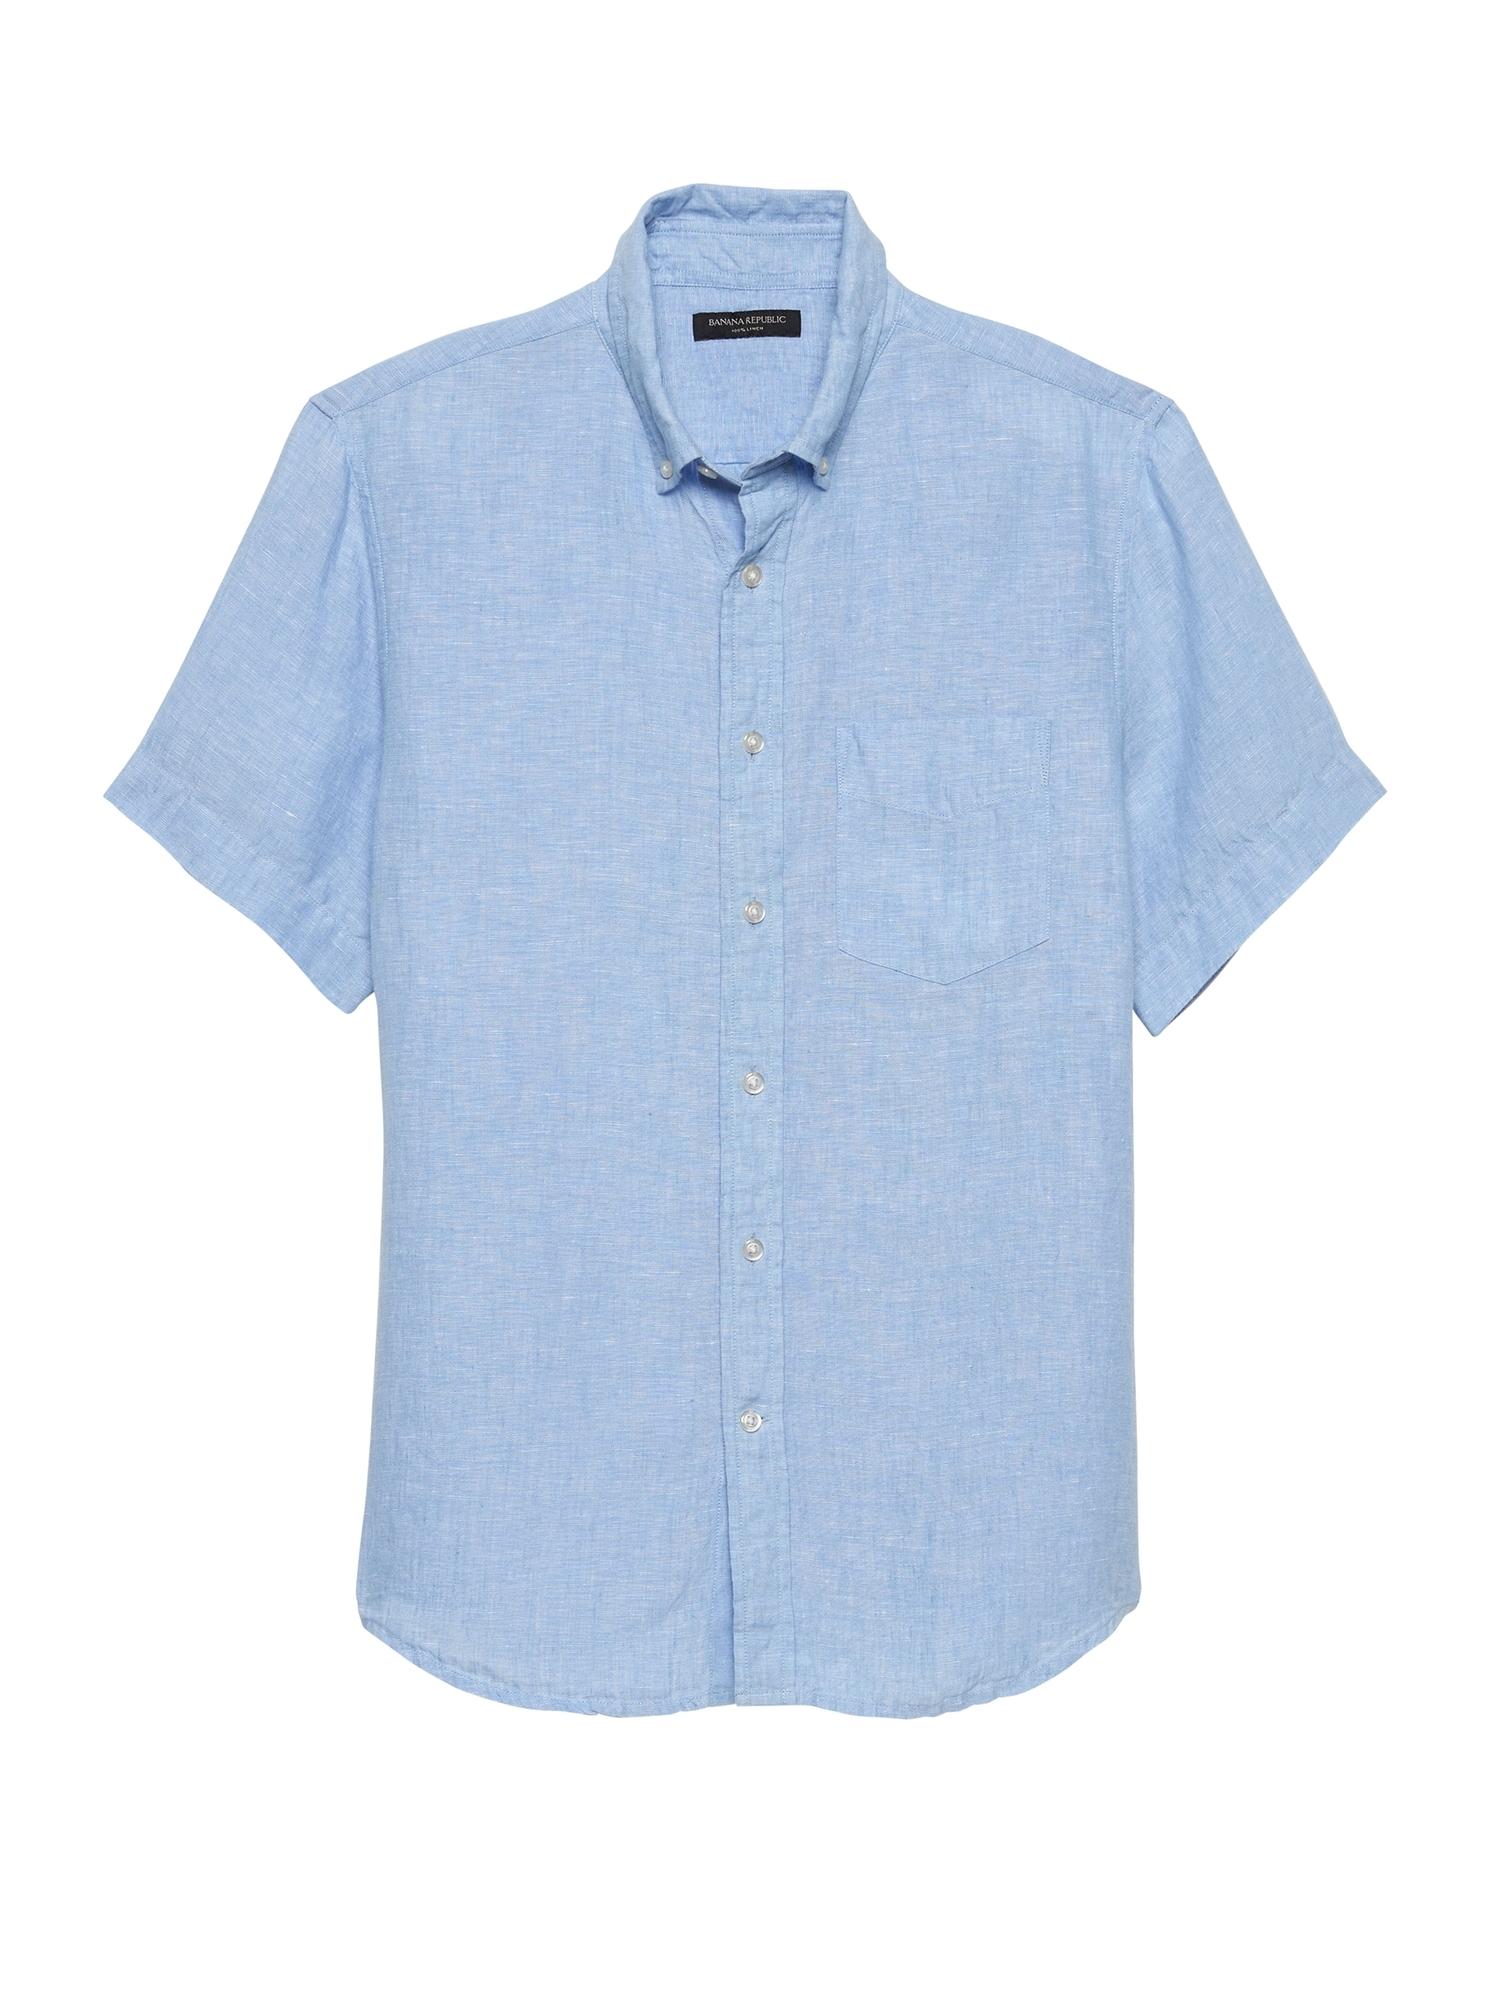 Banana Republic Slim-fit Linen Shirt in Light Blue (Blue) for Men - Lyst